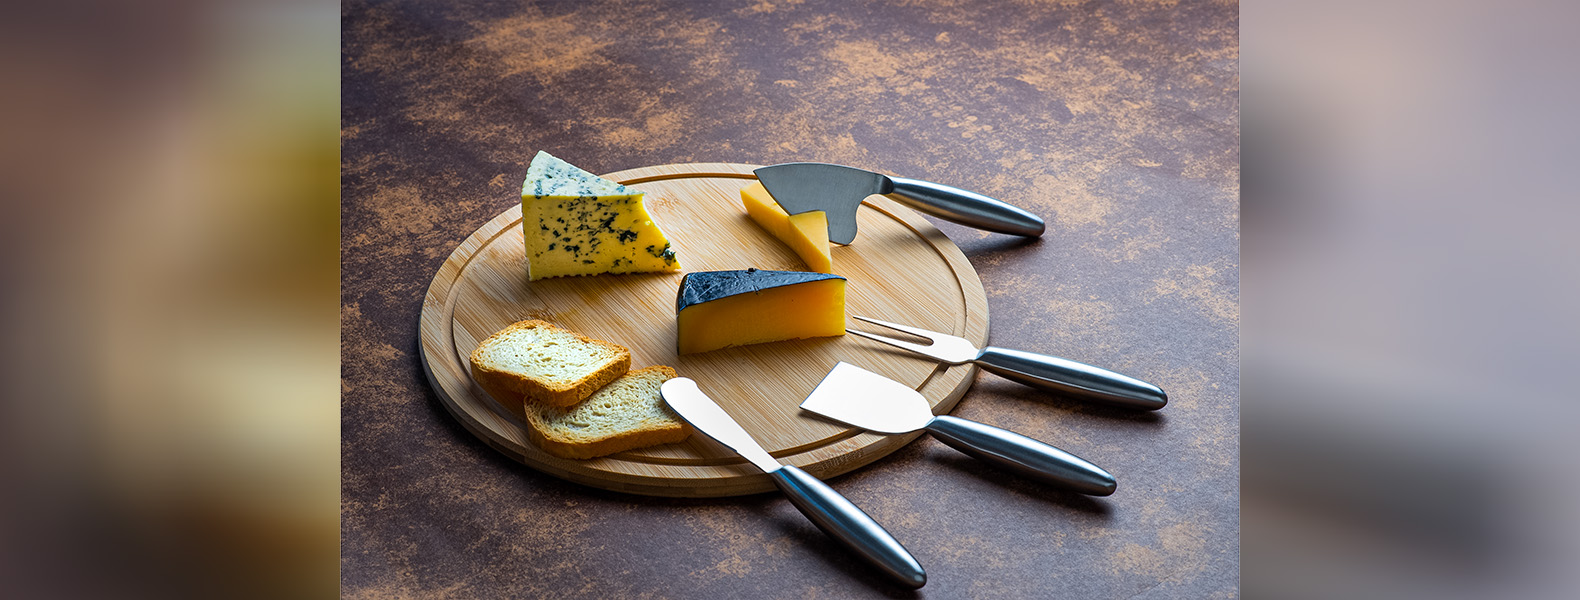 Conjunto para queijo em Bambu/Inox; Acompanha tábua em bambu; Garfo, faca sem ponta, faca com ponta e faca quadrada em Aço Inox 2CR13.